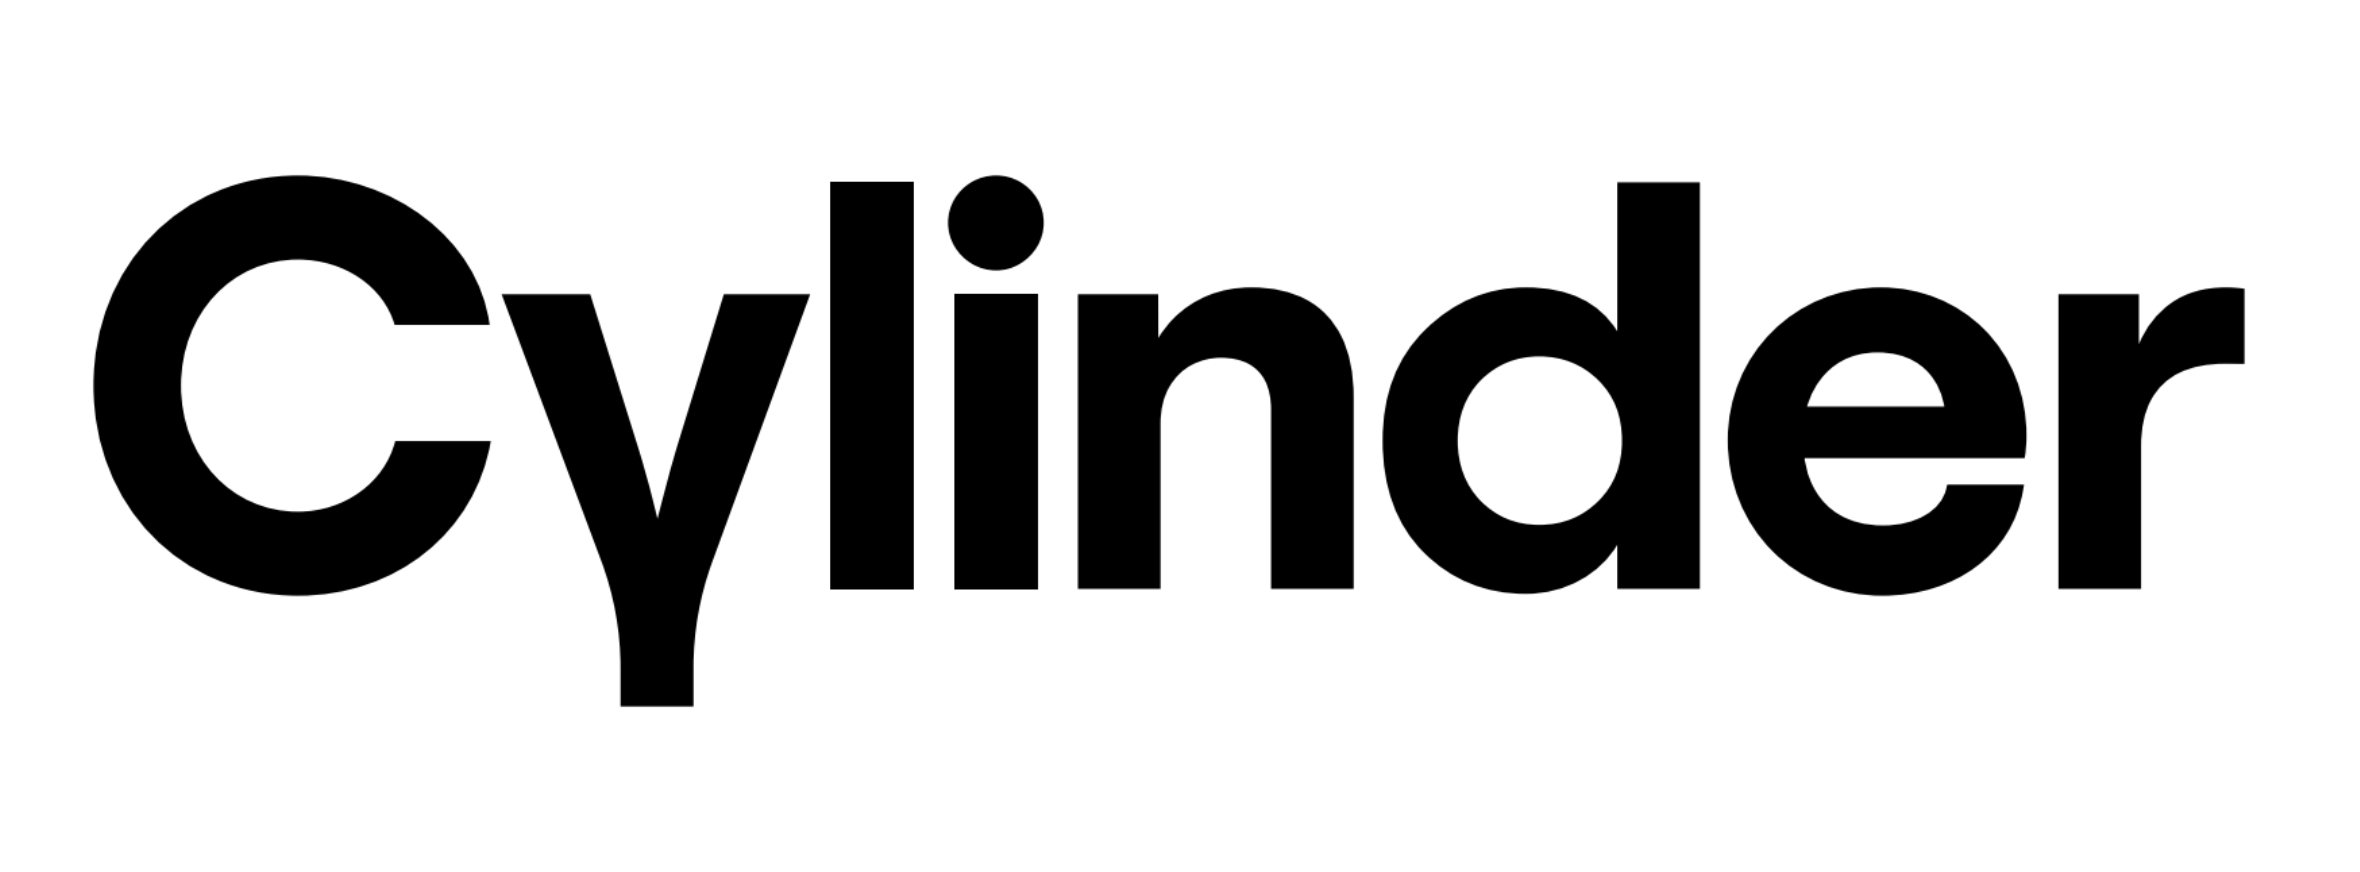 Cylinder Logo.png